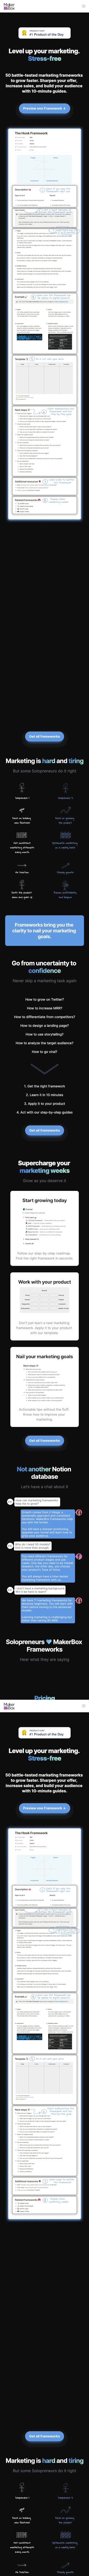 MakerBox Frameworks landing page design